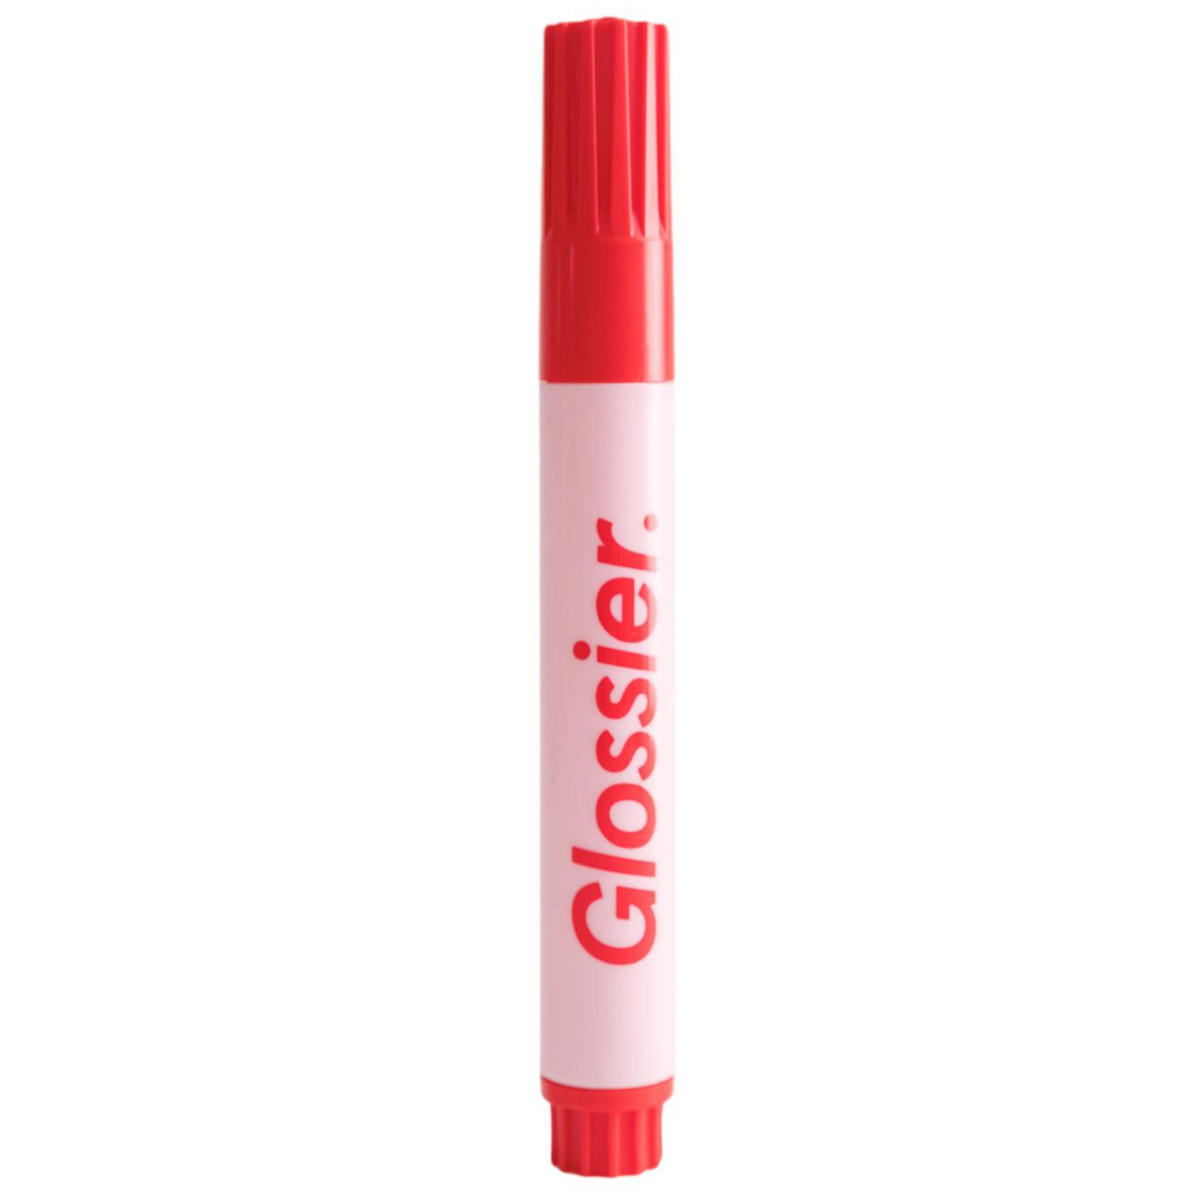 Glossier Zit Stick Breakout Eraser